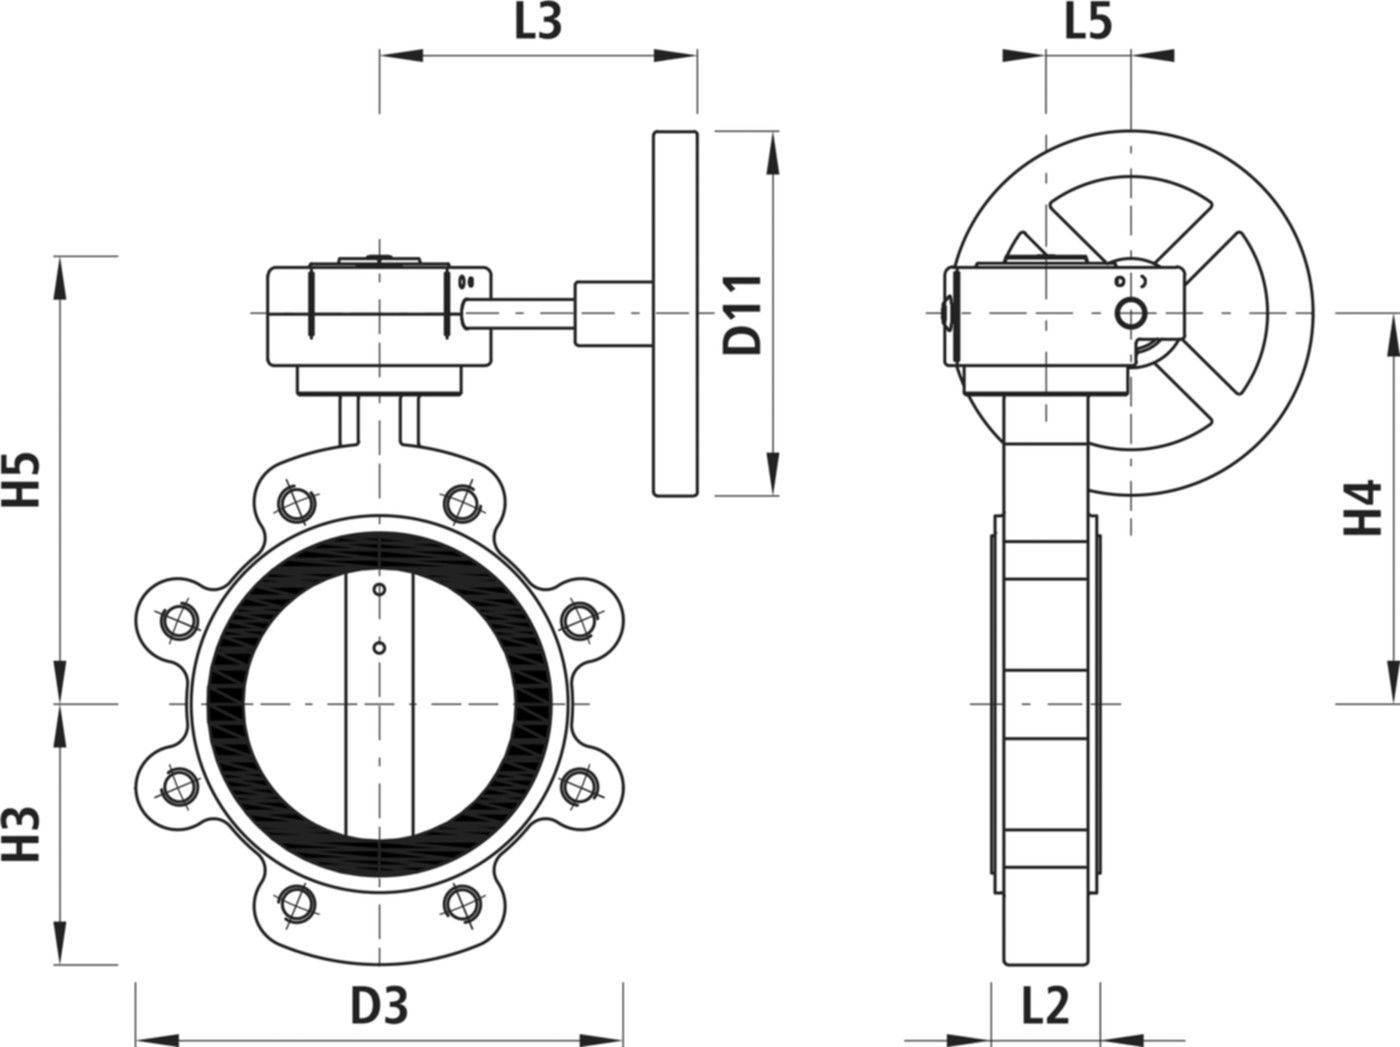 Absperrklappe mit Getriebe Typ LI 9943 DN 150 PN 16 - Hawle Absperrklappen